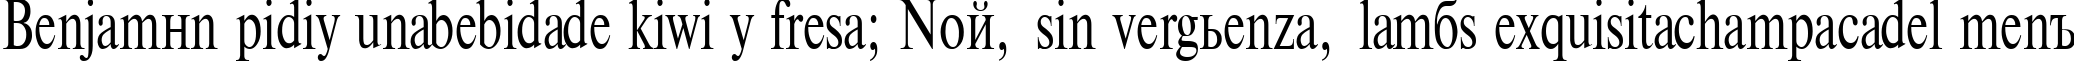 Пример написания шрифтом TimesET70n текста на испанском